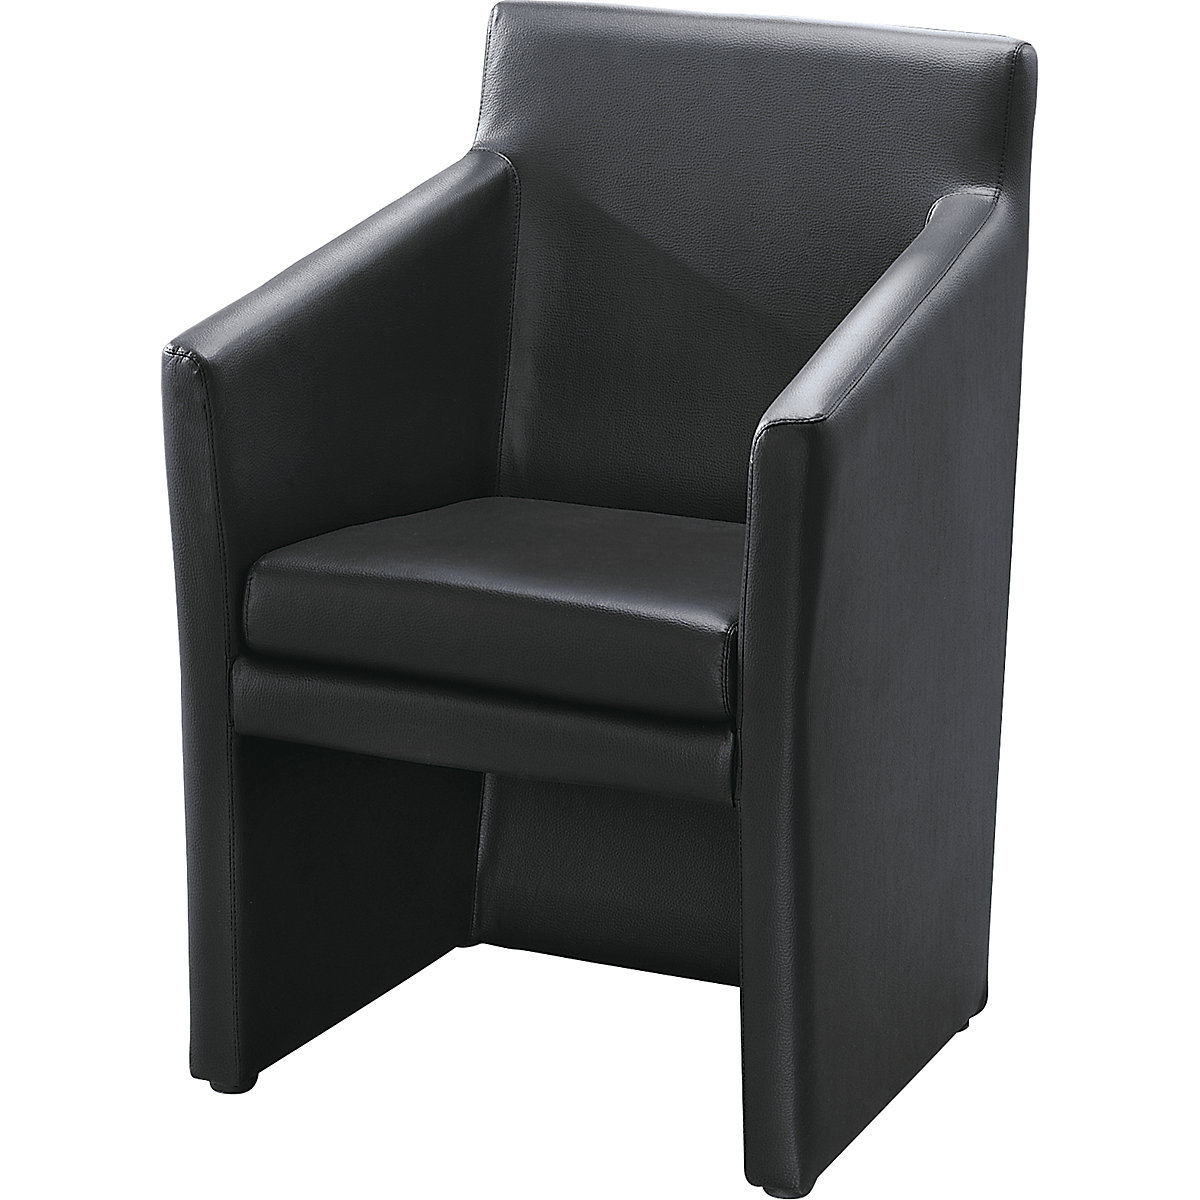 Klub fotelja, kutni oblik, VxŠxD 850 x 575 x 530 mm, presvlaka od poliuretana, u crnoj boji-5